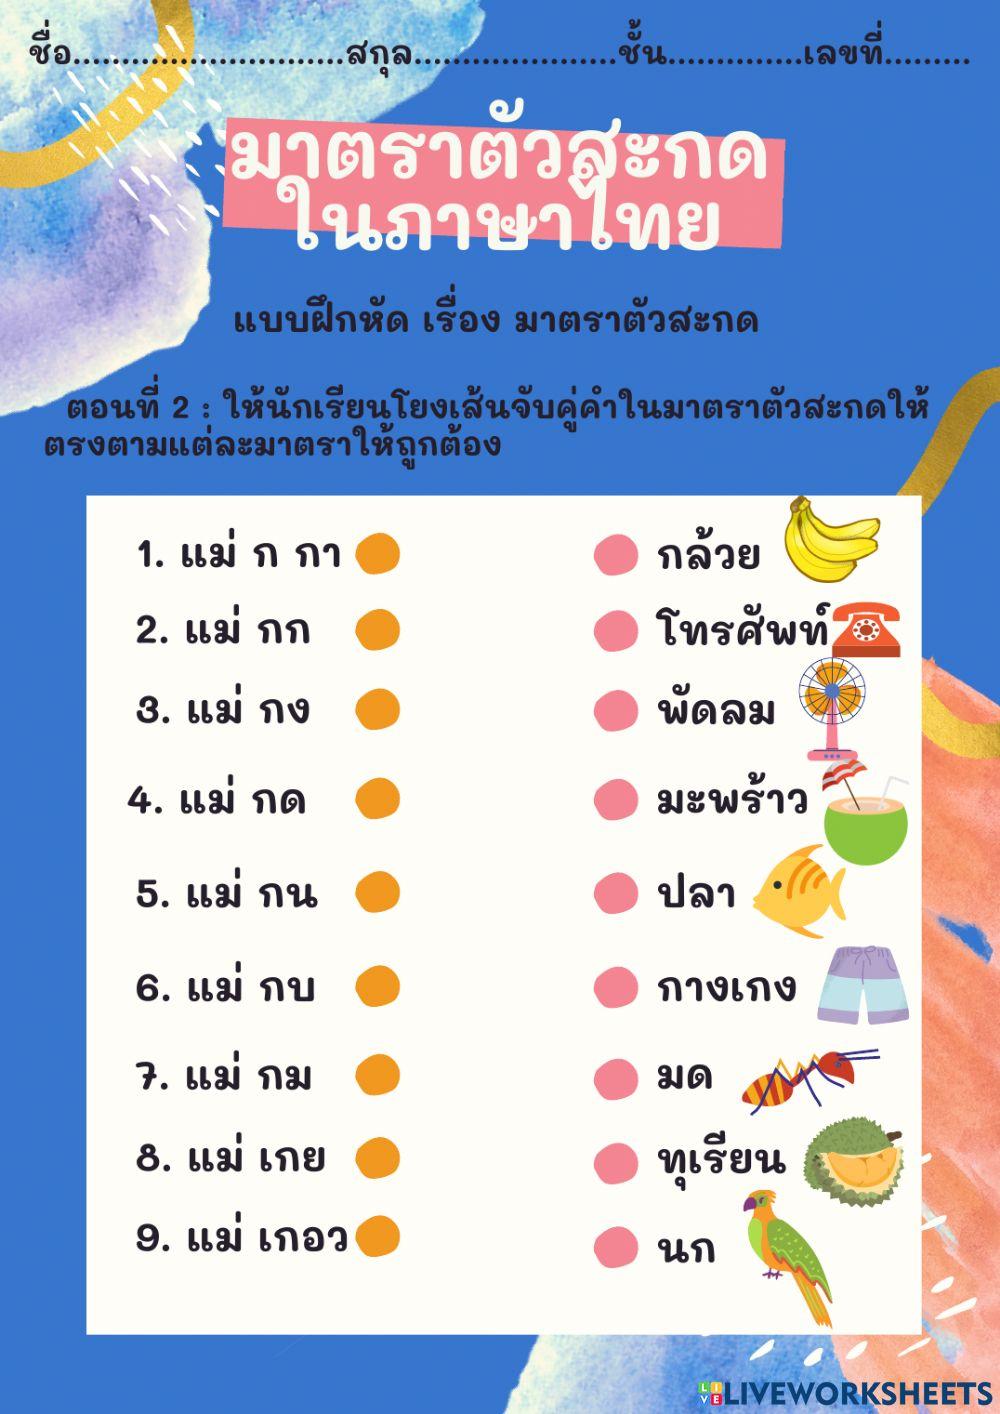 ใบงานมาตราตัวสะกดในภาษาไทย